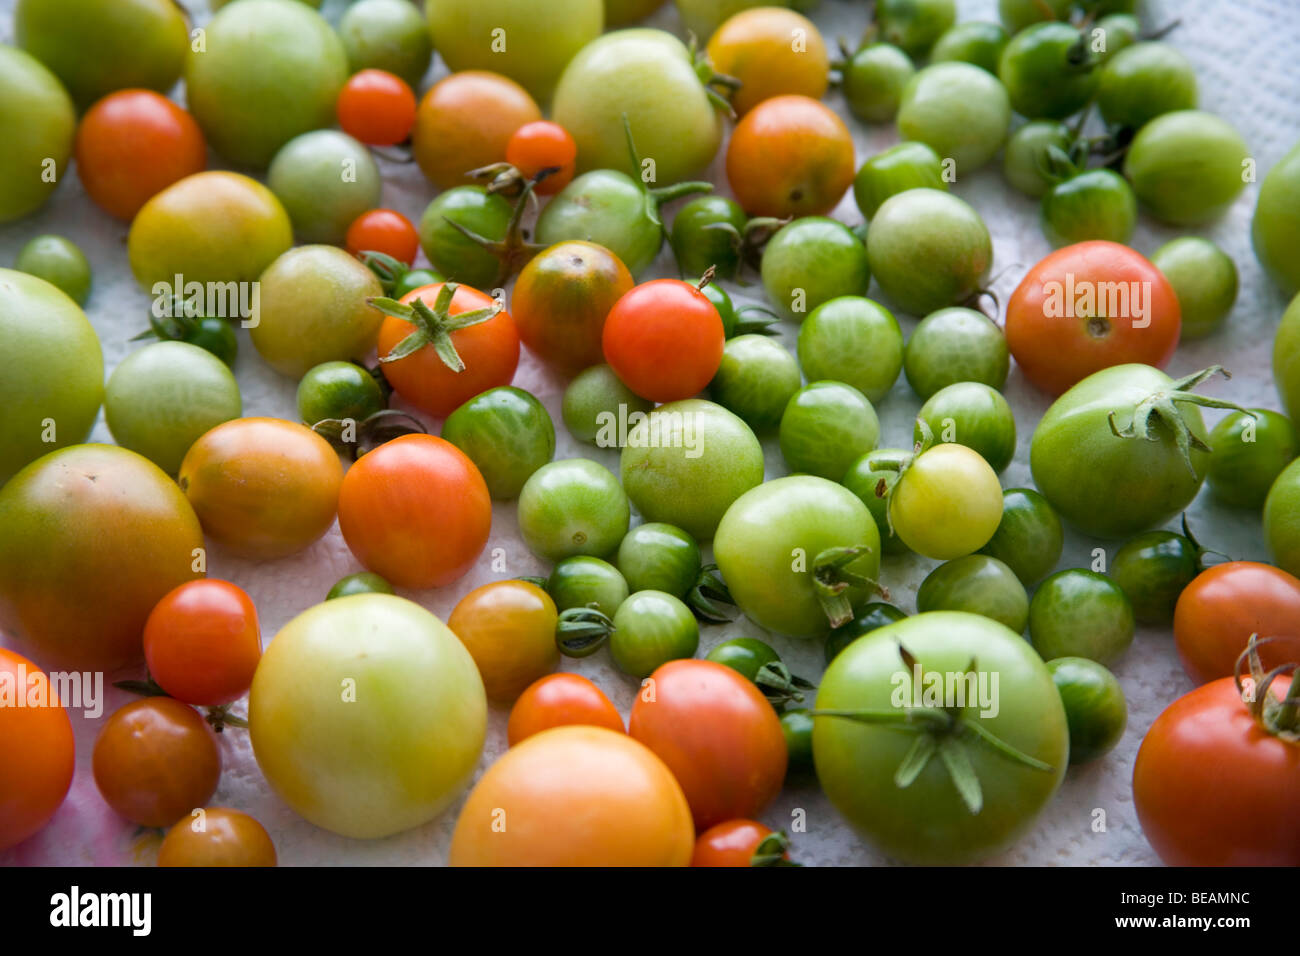 Unripe tomatoes Stock Photo